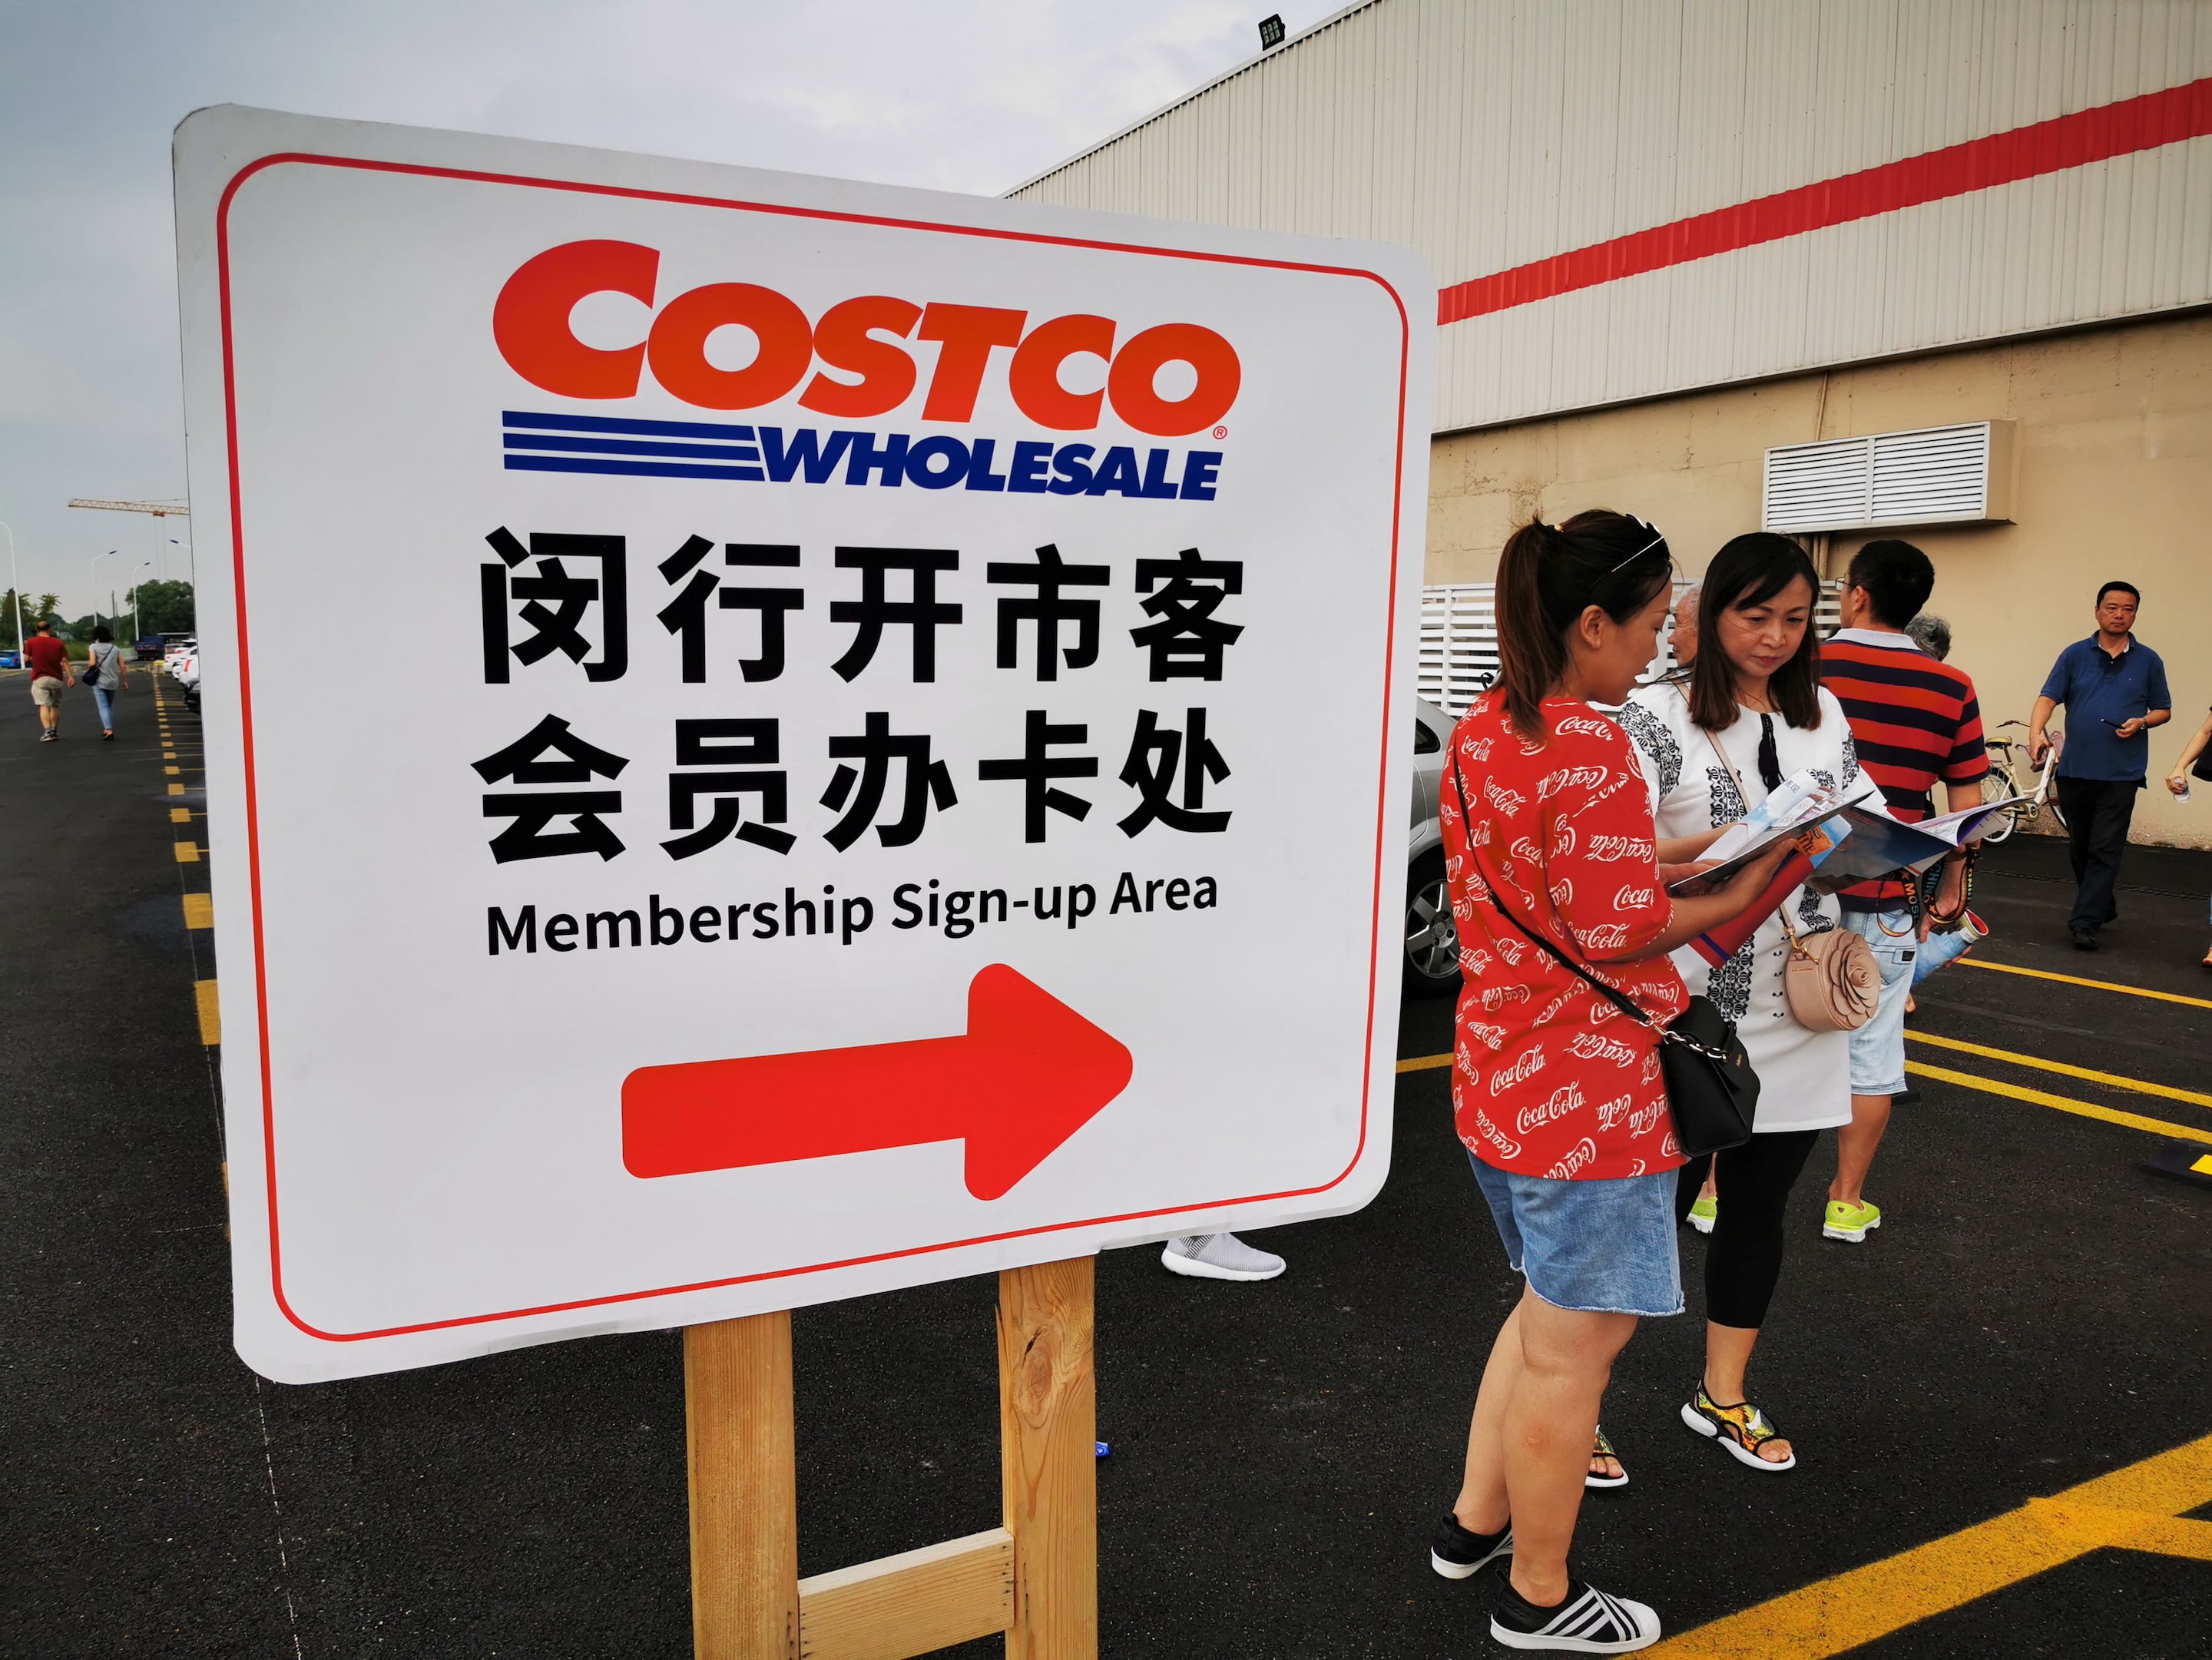 Thương hiệu bán lẻ Costco "lấy le" với người dân Trung Quốc khi vừa mới khai trương như thế nào?- Ảnh 3.